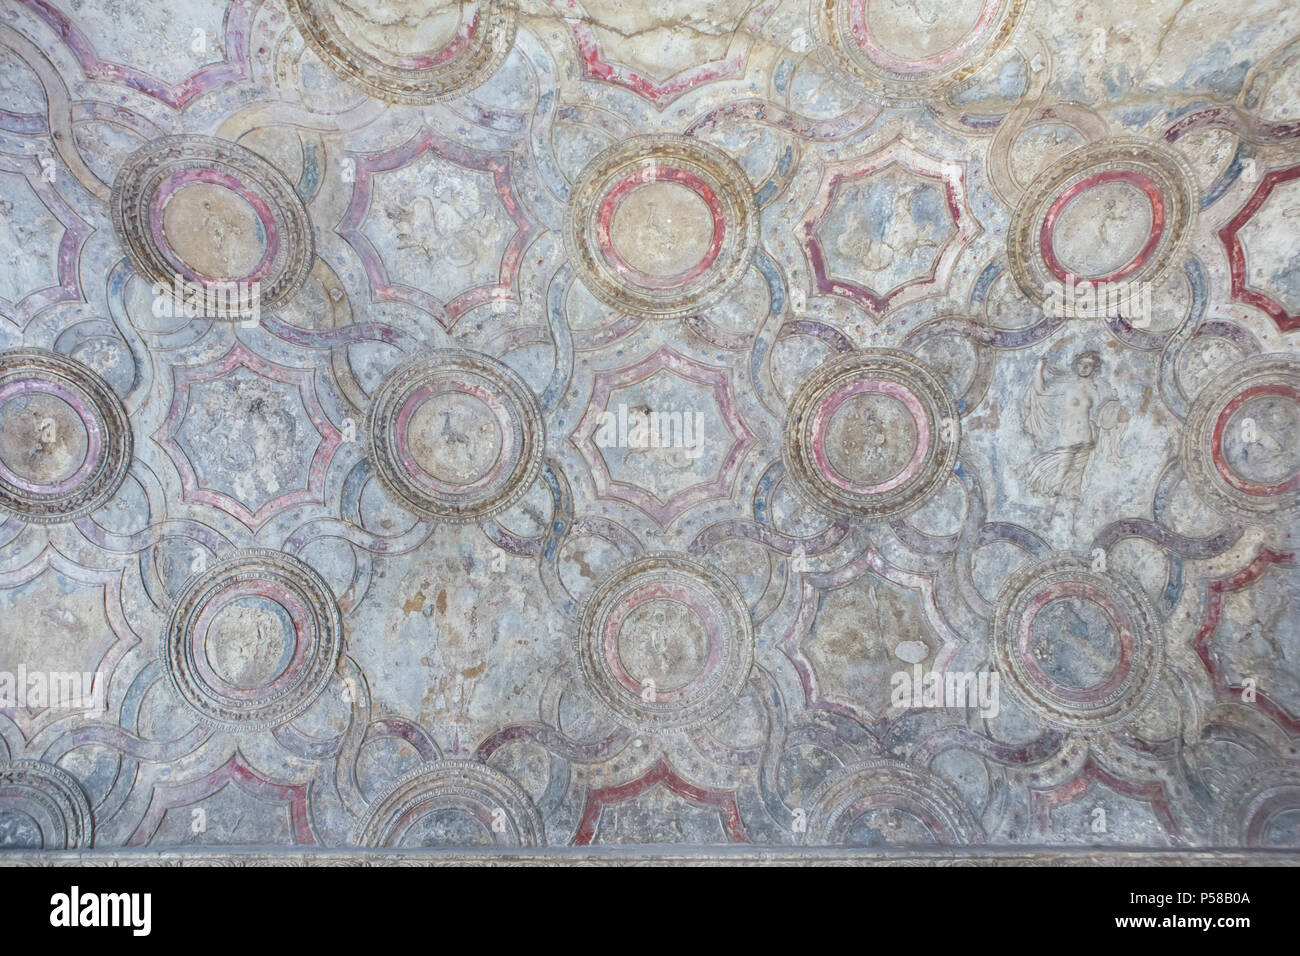 Soffitto decorazione a stucco nei bagni Stabian (Terme Stabiane) nel sito archeologico di Pompei) vicino a Napoli, campania, Italy. Foto Stock